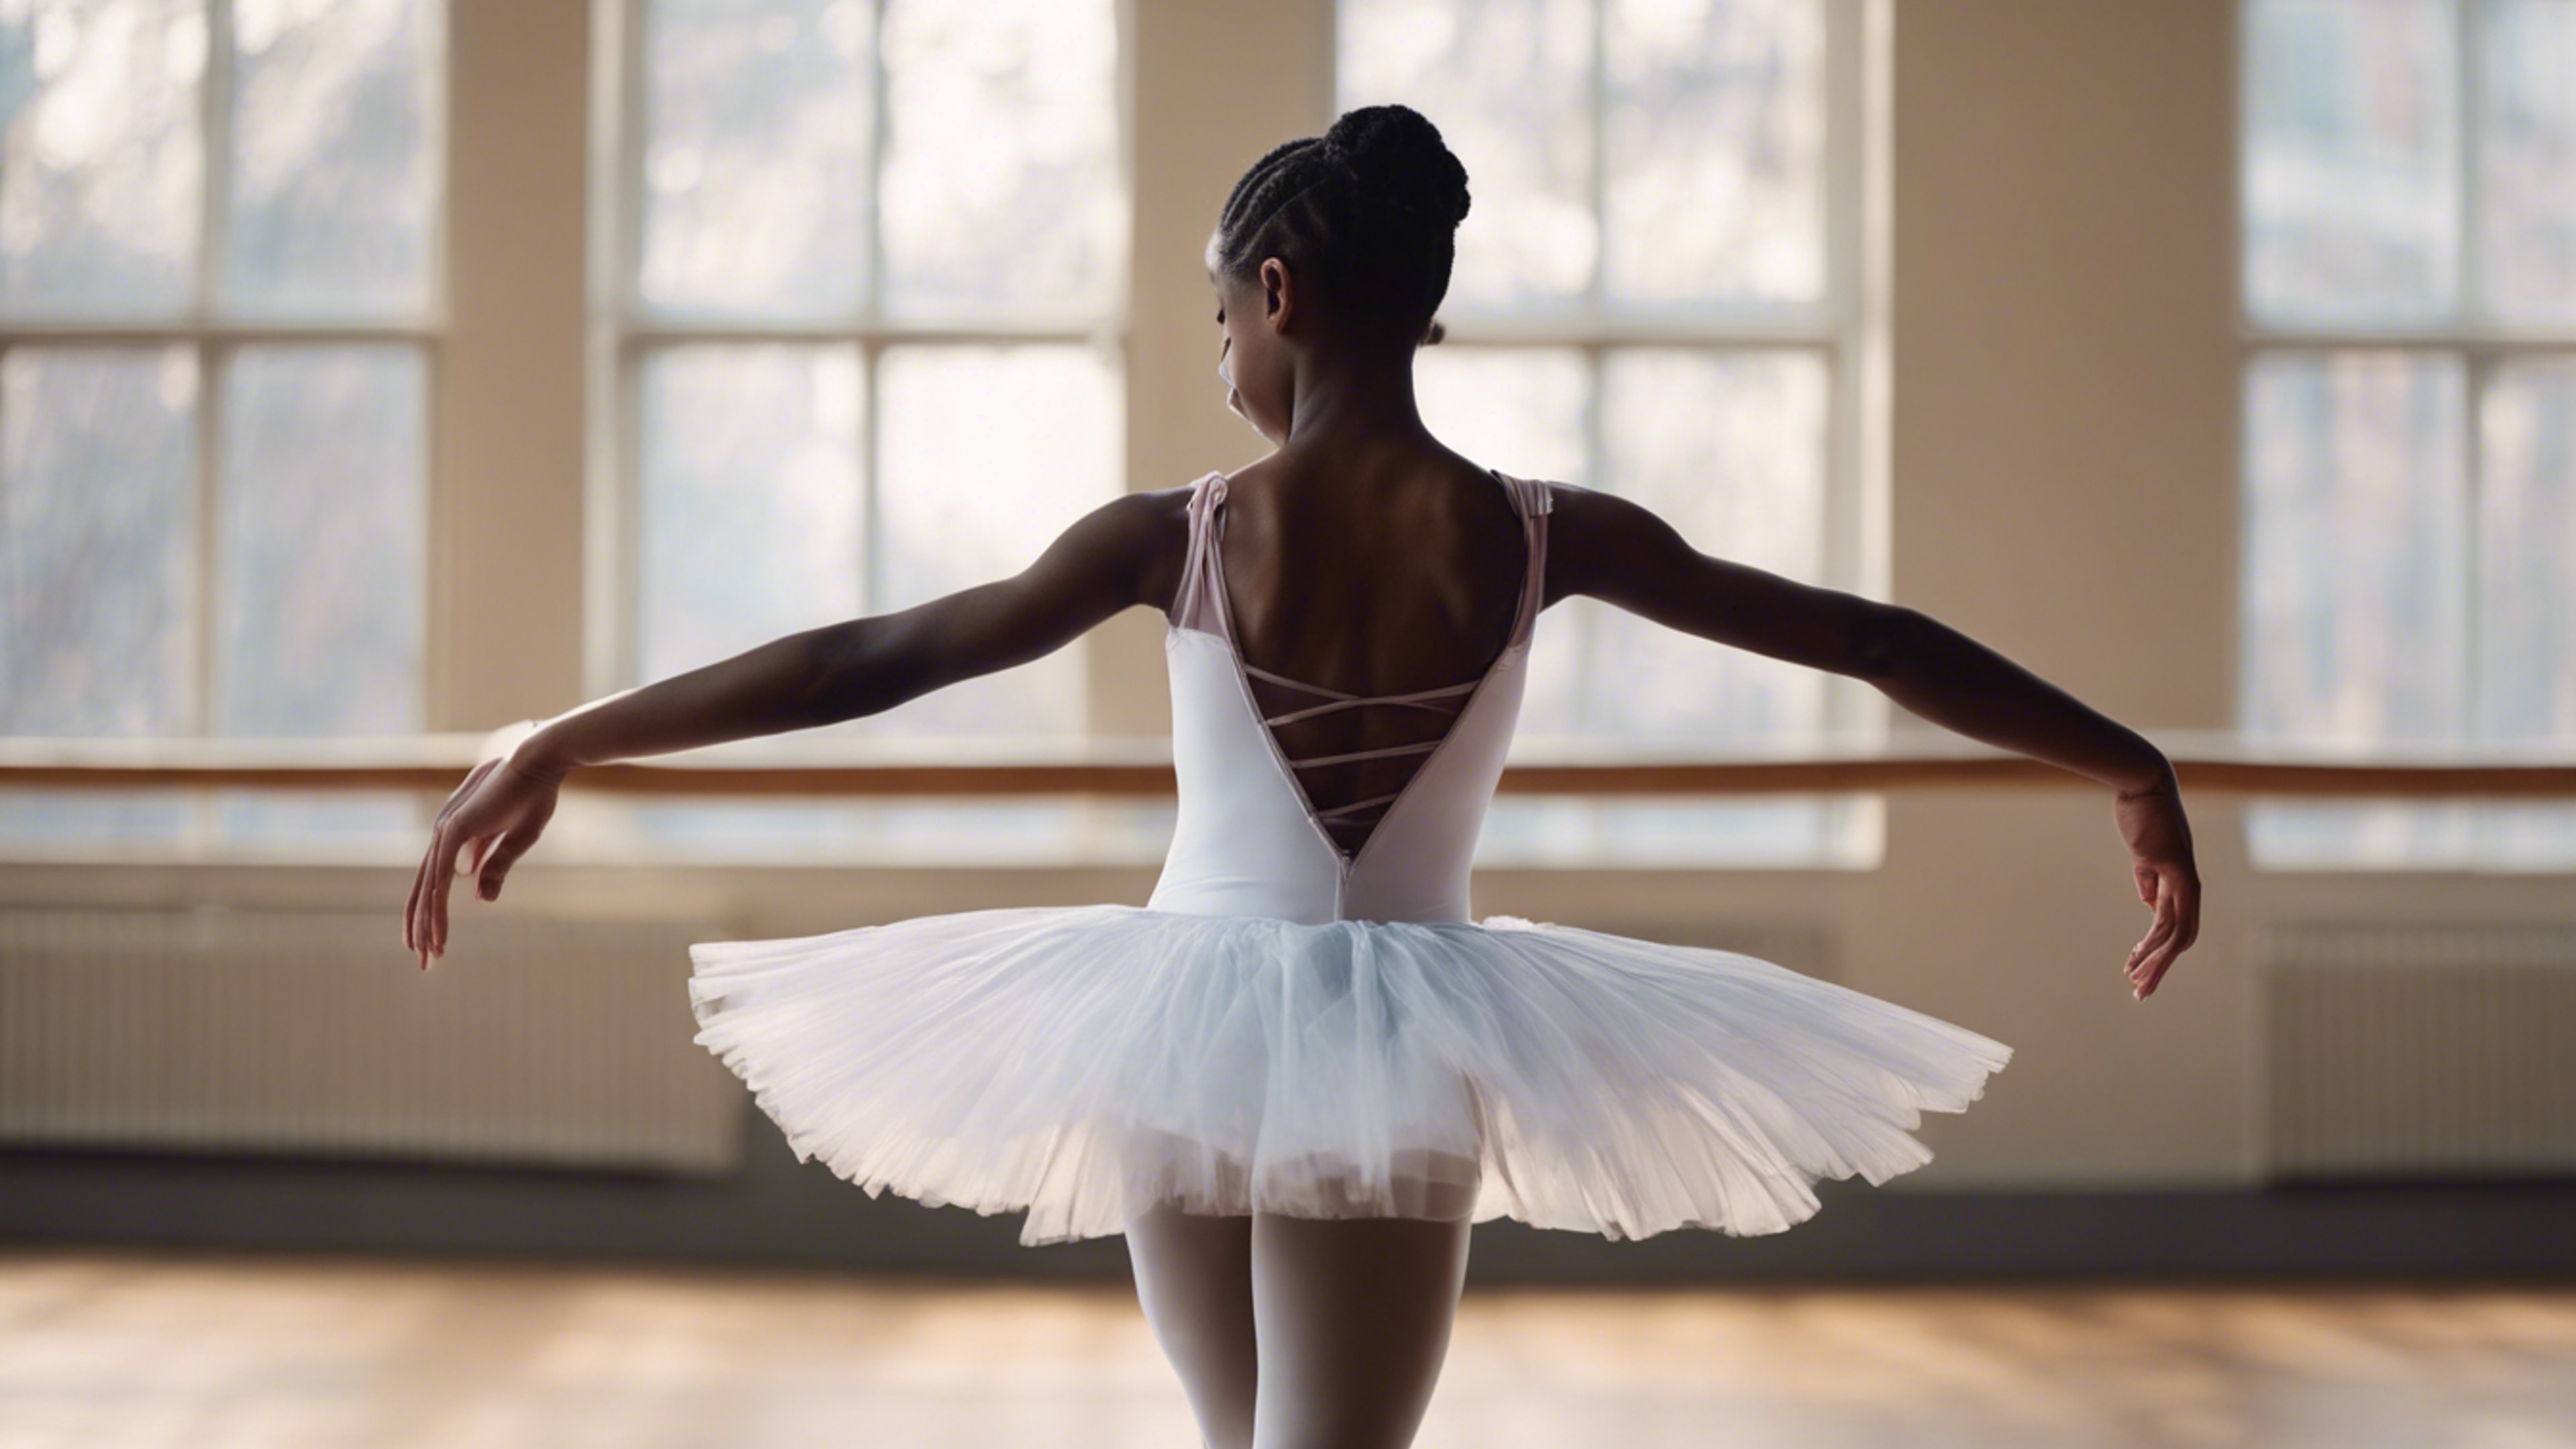 A young black girl practicing ballet in a beautiful satin tutu. Tapéta[c9fc18550cde4bfca1b8]